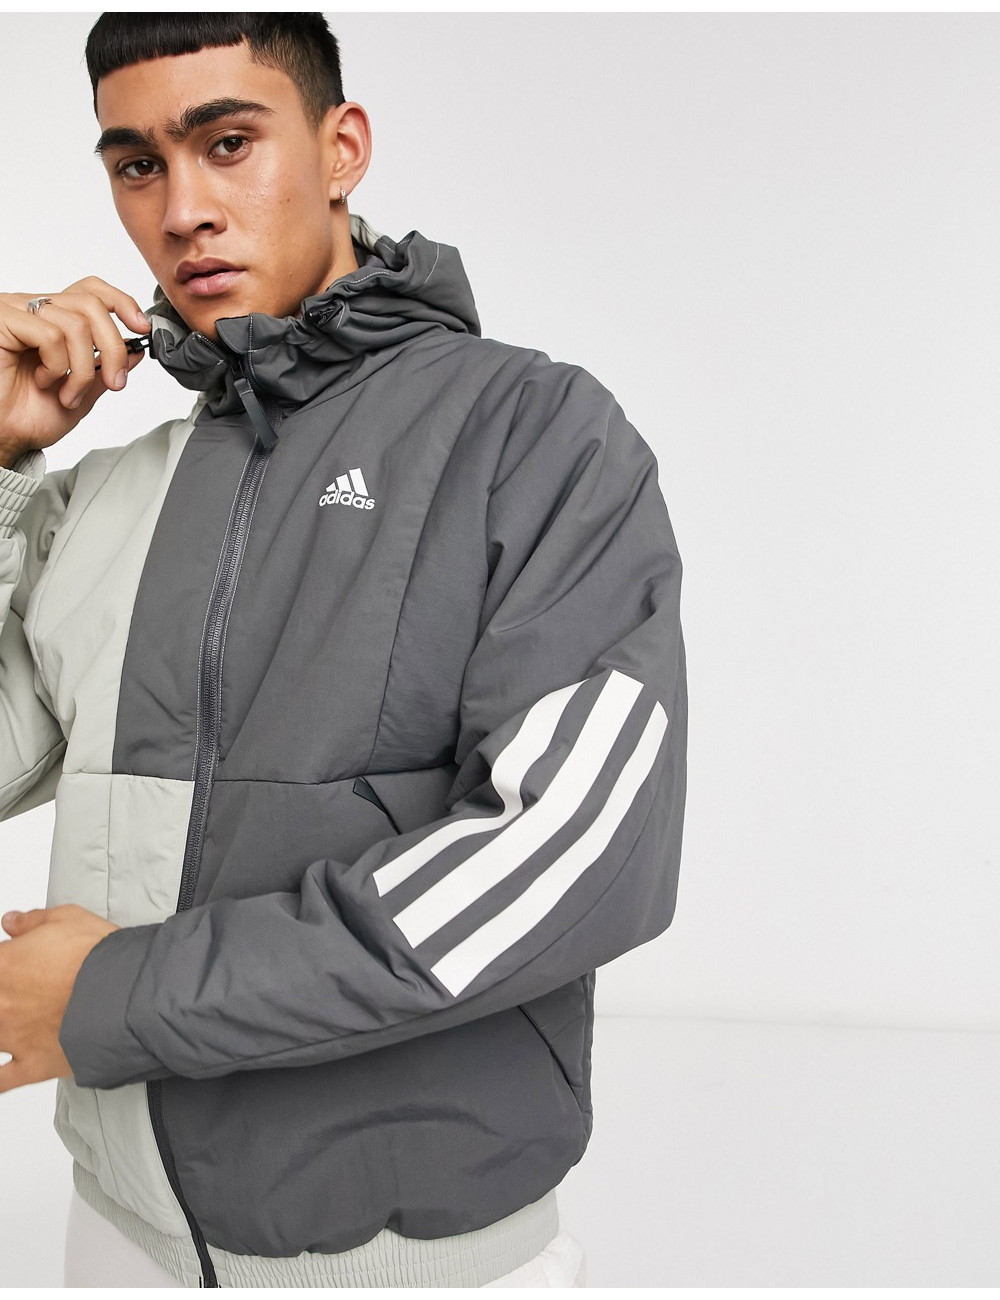 adidas hooded jacket in grey